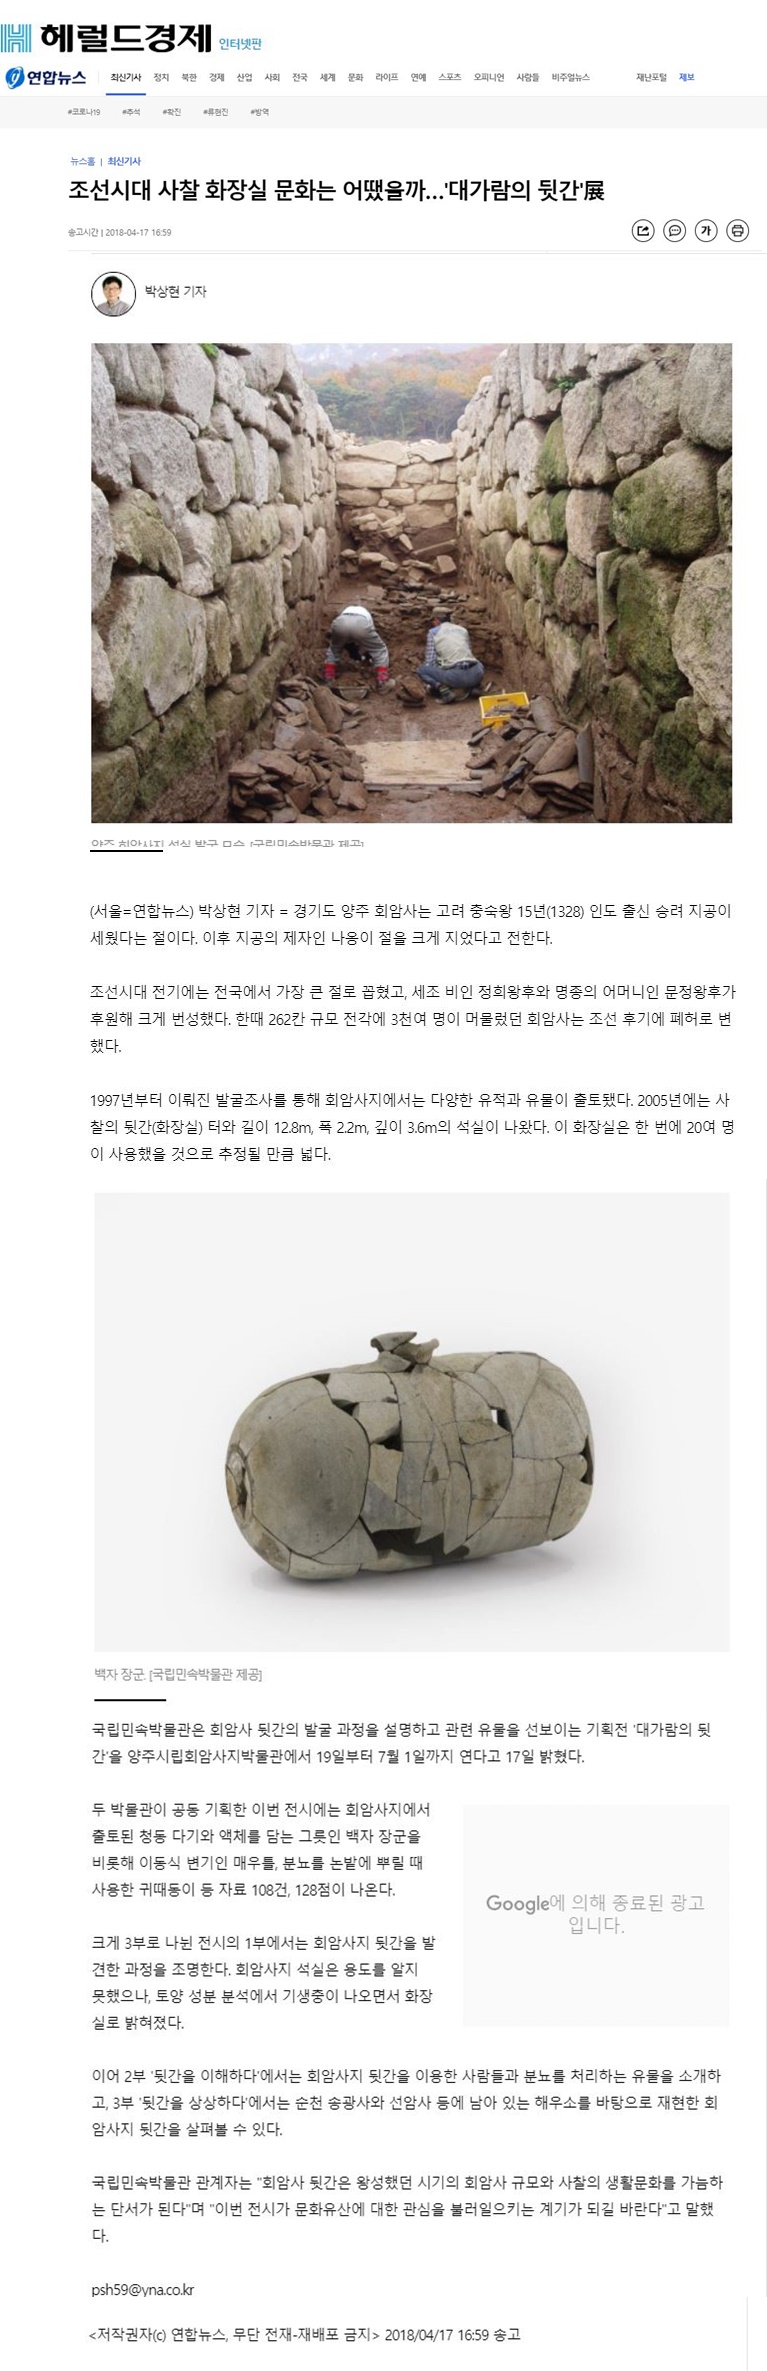 [연합뉴스] 조선시대 사찰 화장실 문화는 어땠을까...'대가람의 뒷간'展 이미지1